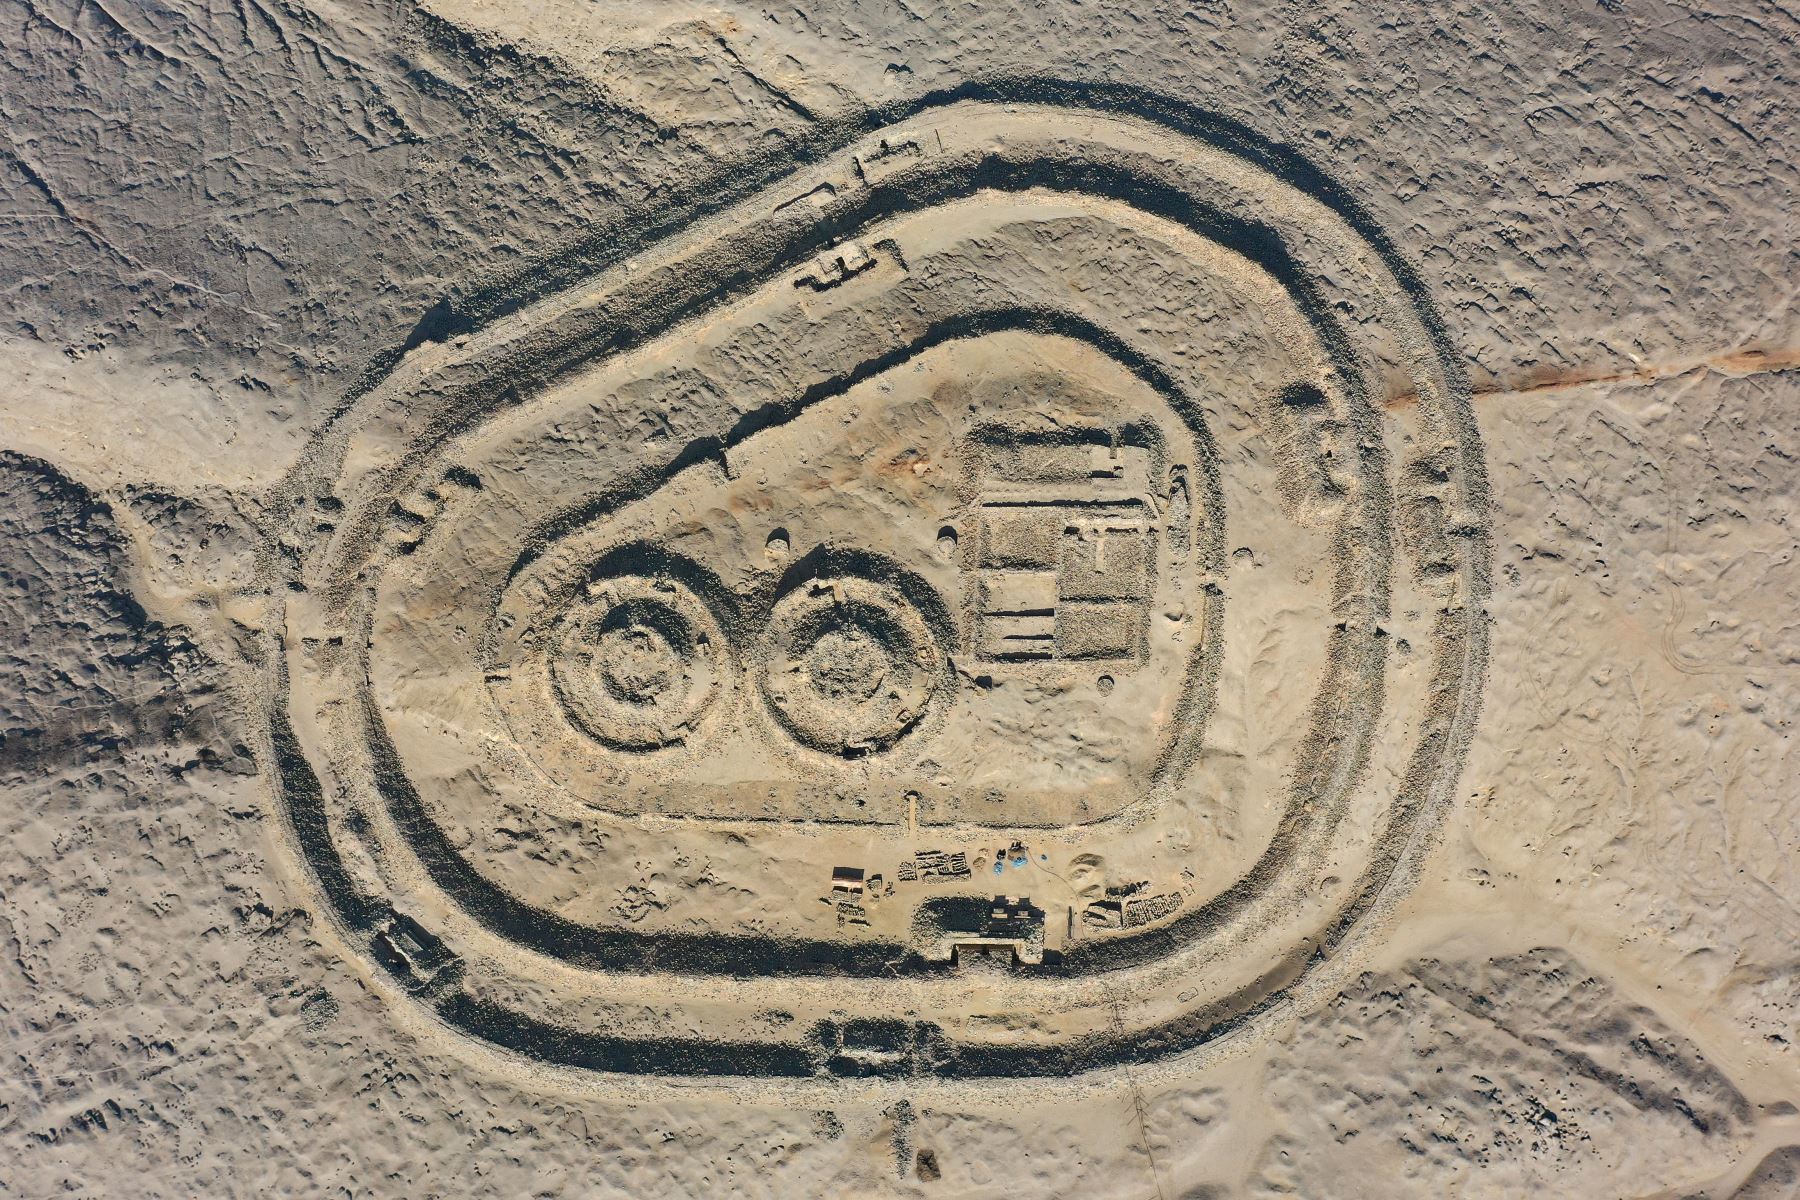 En esta foto de archivo , vista aérea del Observatorio Solar Chankillo cerca de Casma, Perú. - Chankillo, el observatorio solar más antiguo de América entre los años 500 y 200 a.C., fue incluido en la lista de sitios del patrimonio mundial de 2021 por el Comité del Patrimonio de la UNESCO.
Foto: AFP